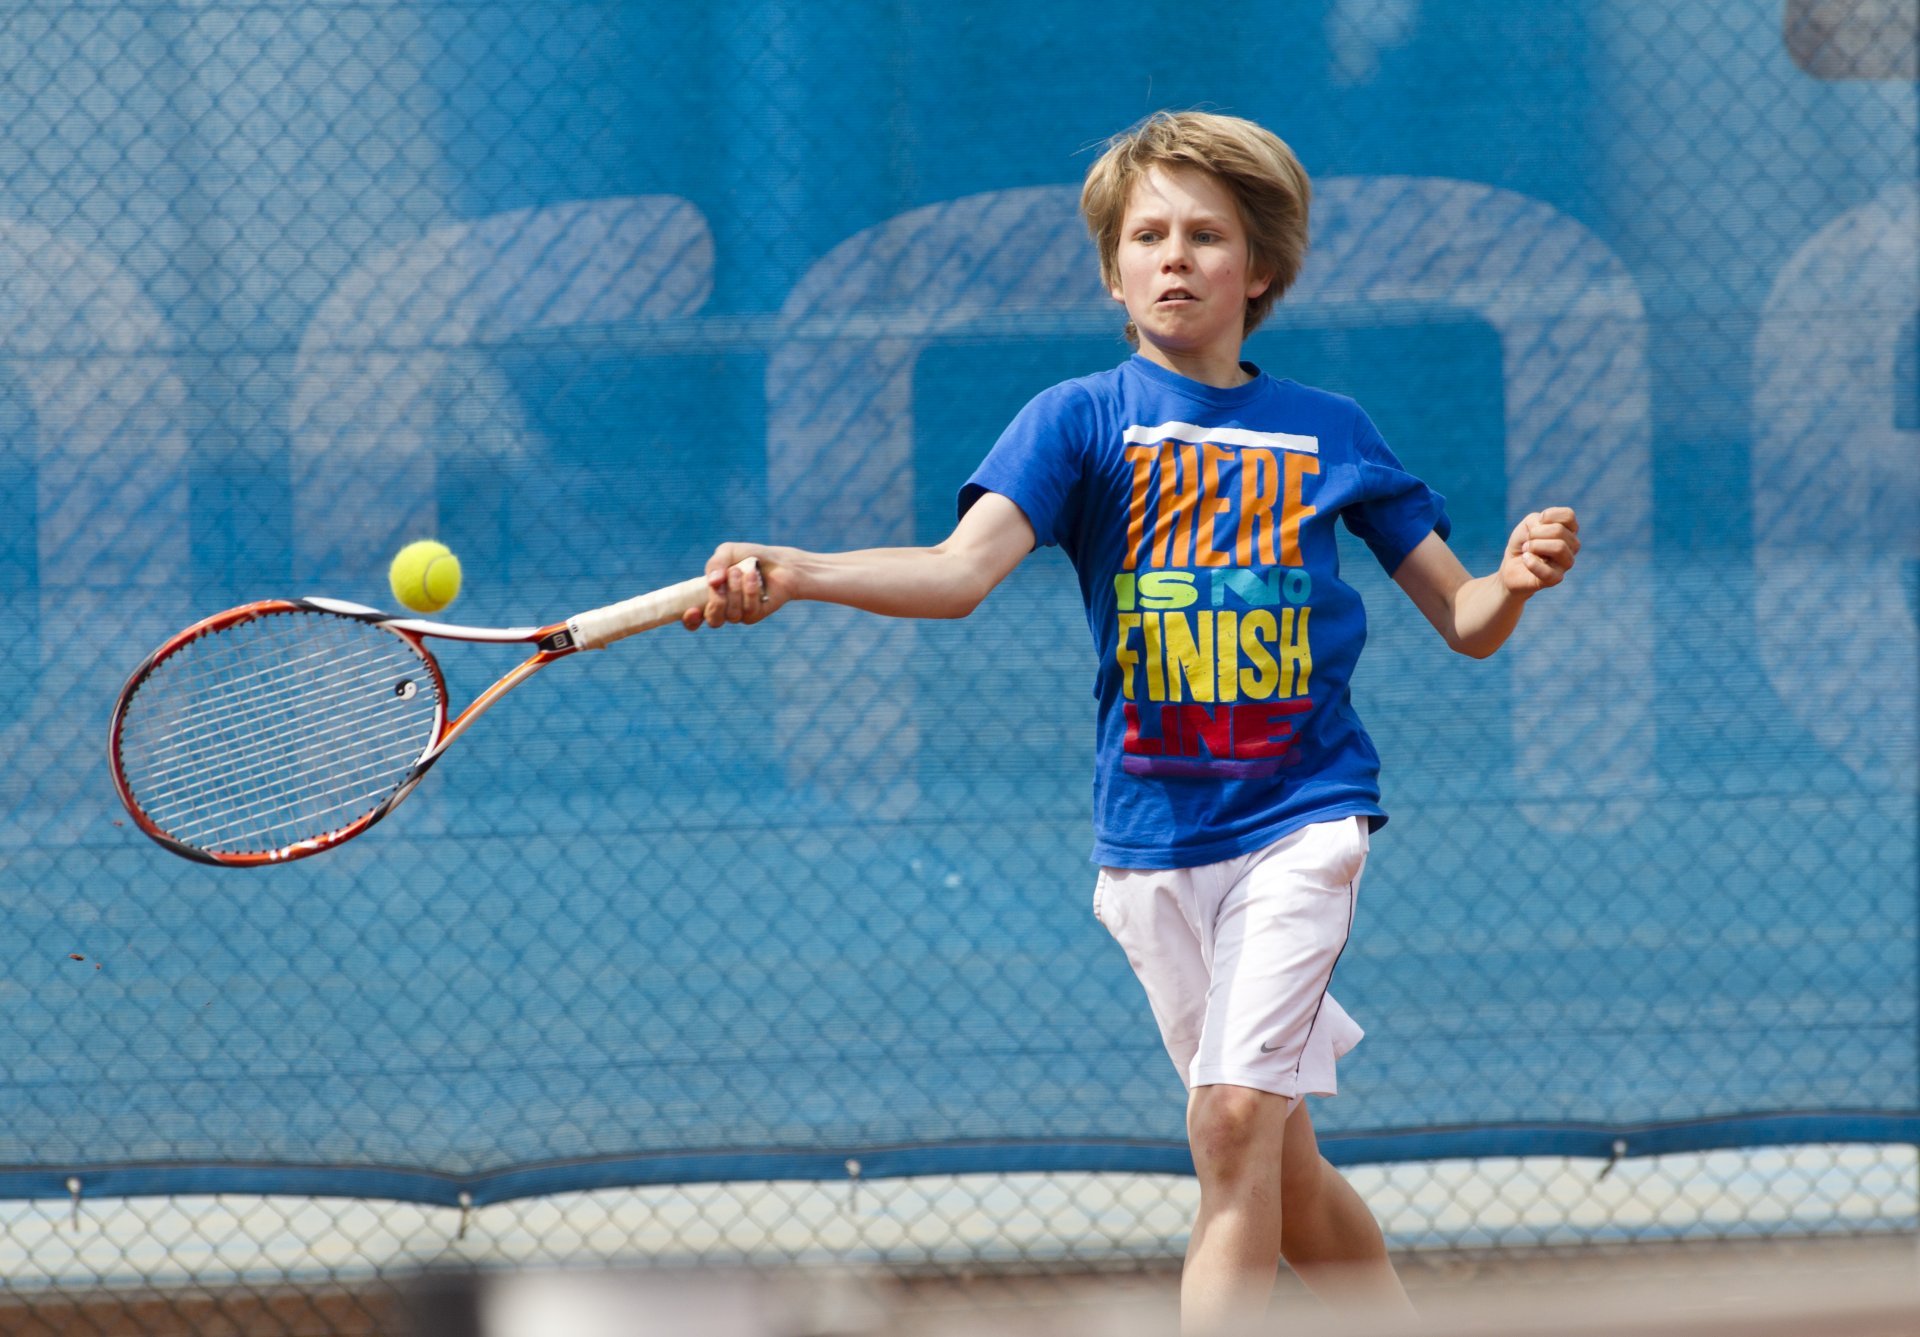 Athletik – Circuittrainings: Tennis – Schnelligkeit (11-15 Jahre)